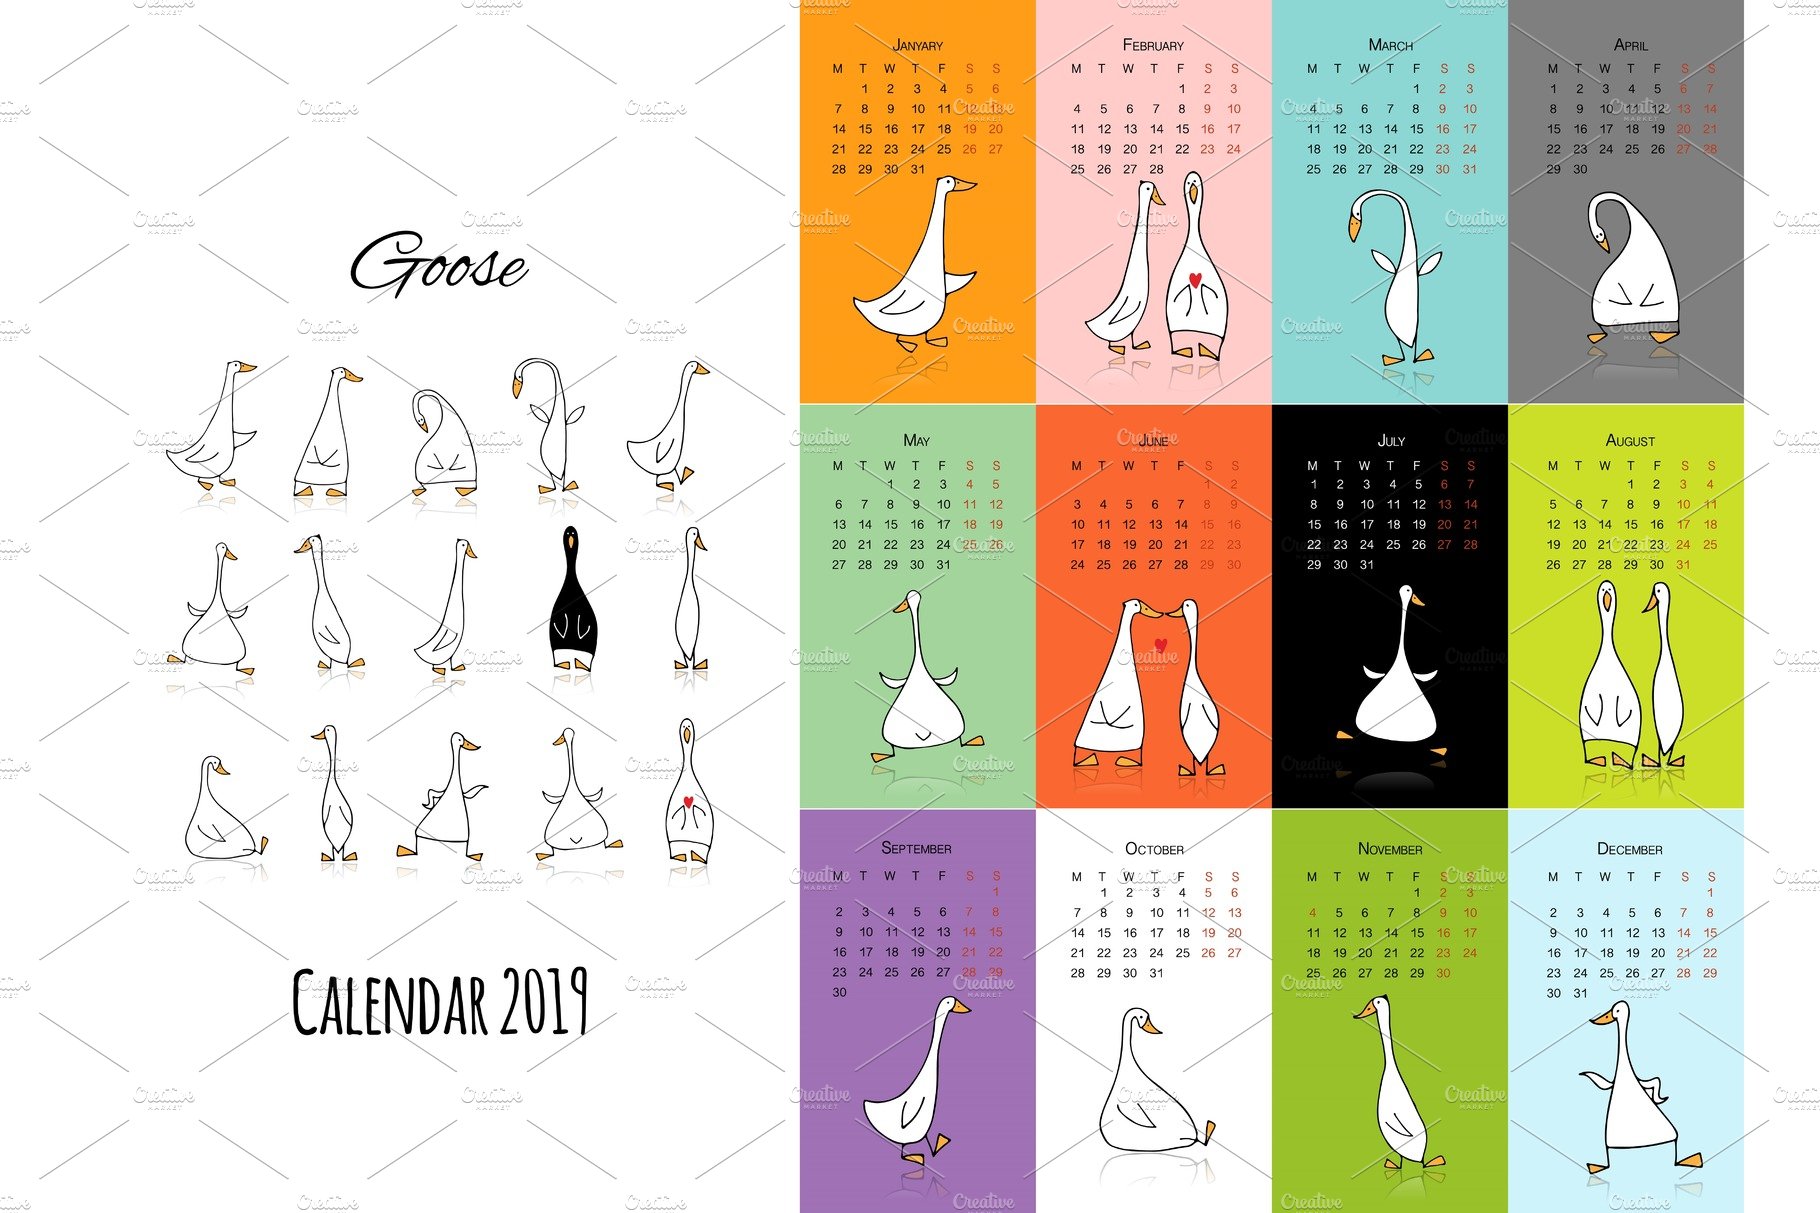 Funny goose, calendar 2019 design cover image.